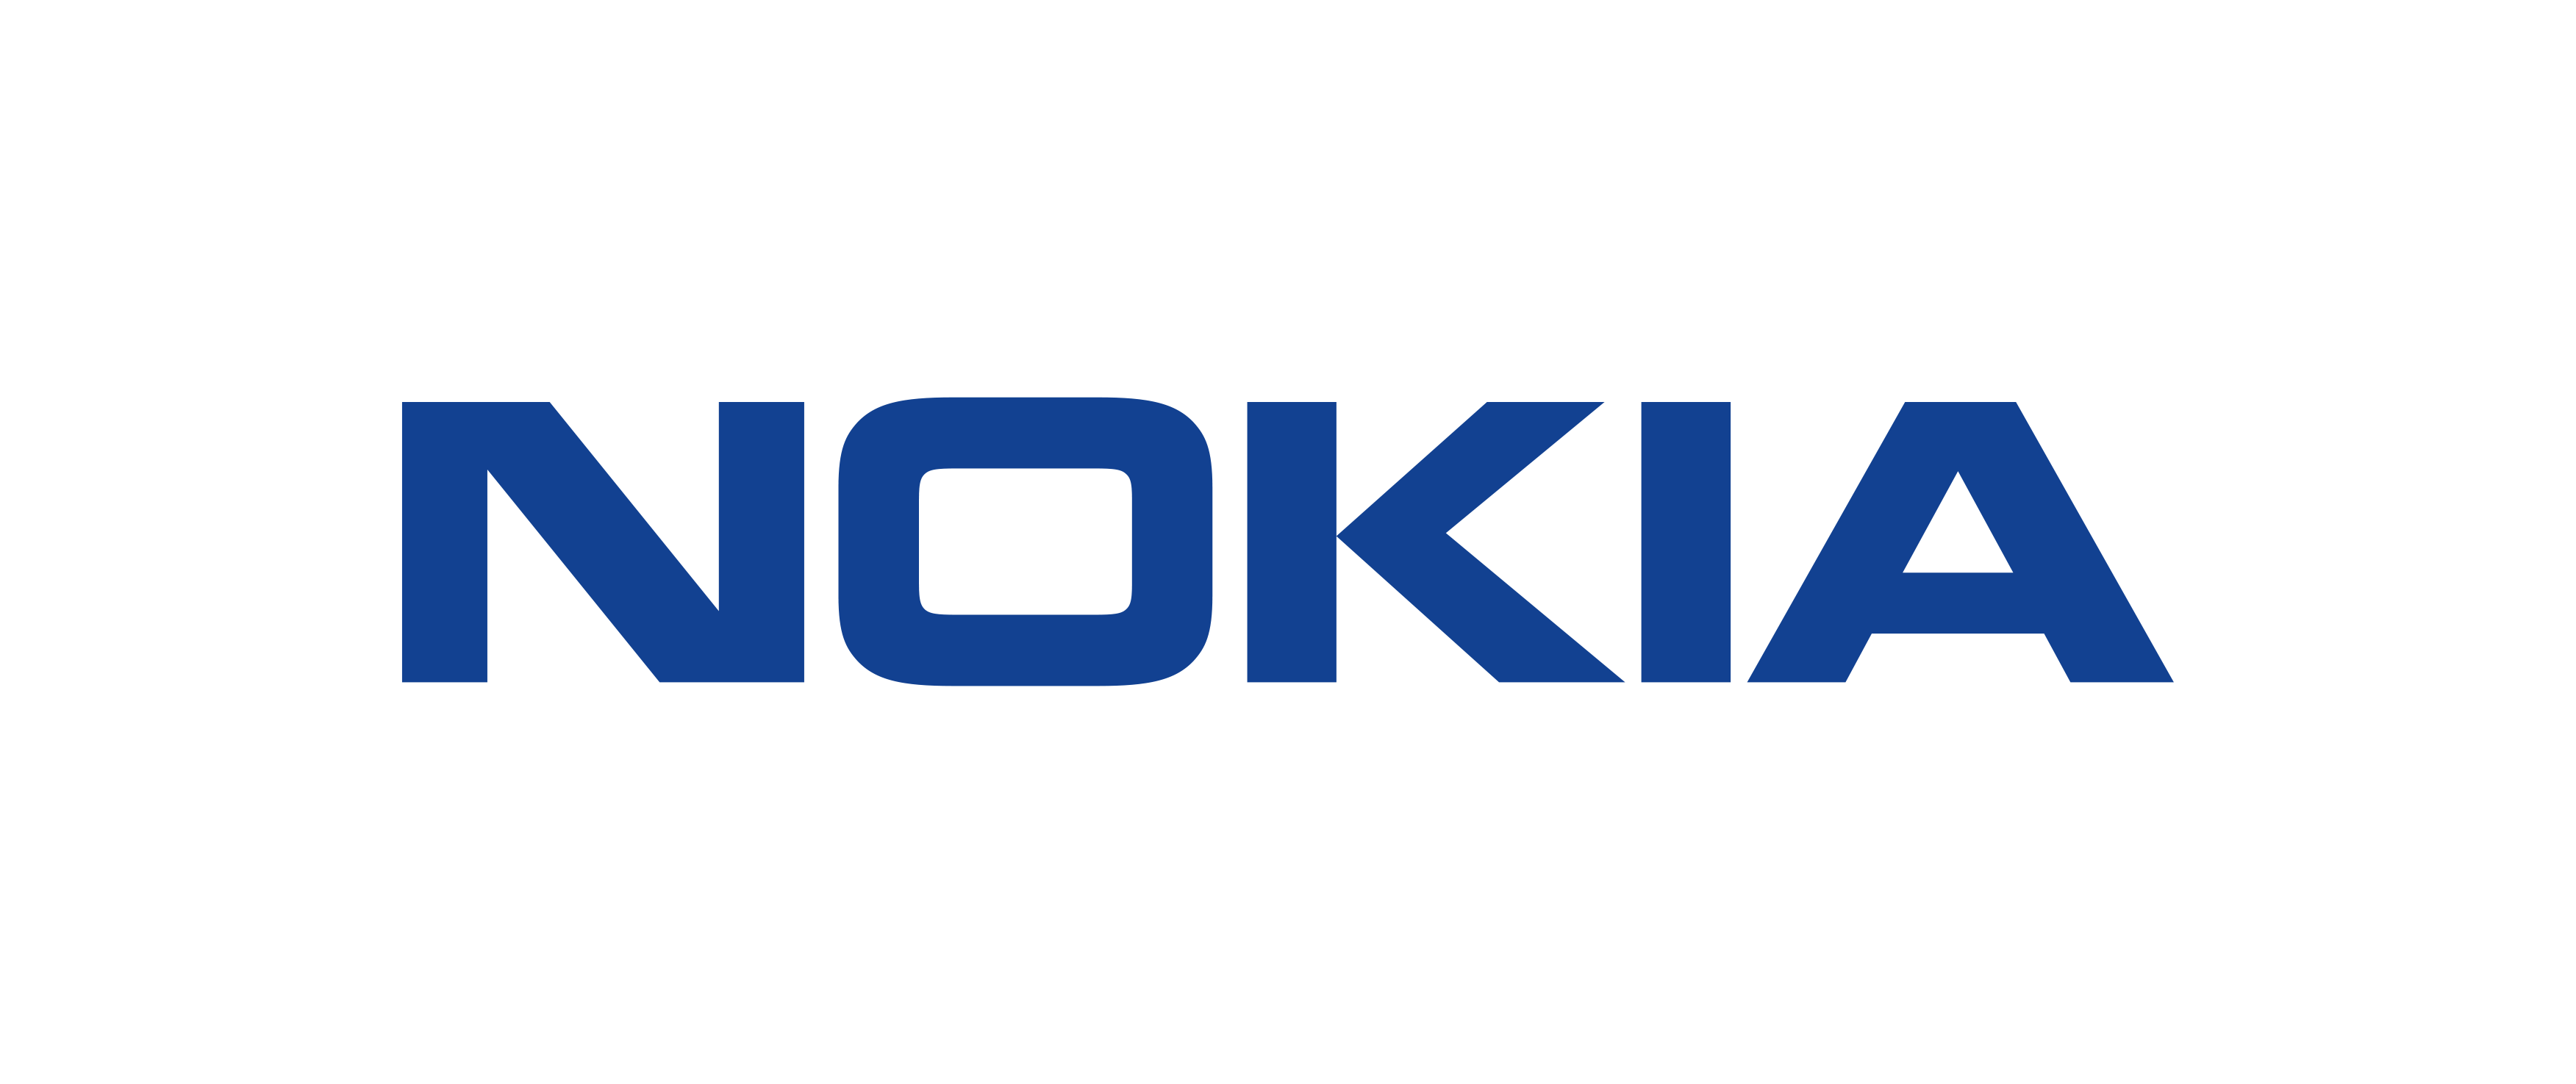 Nokia_logo___dark_blue_5773ce558b2cade006723ecf